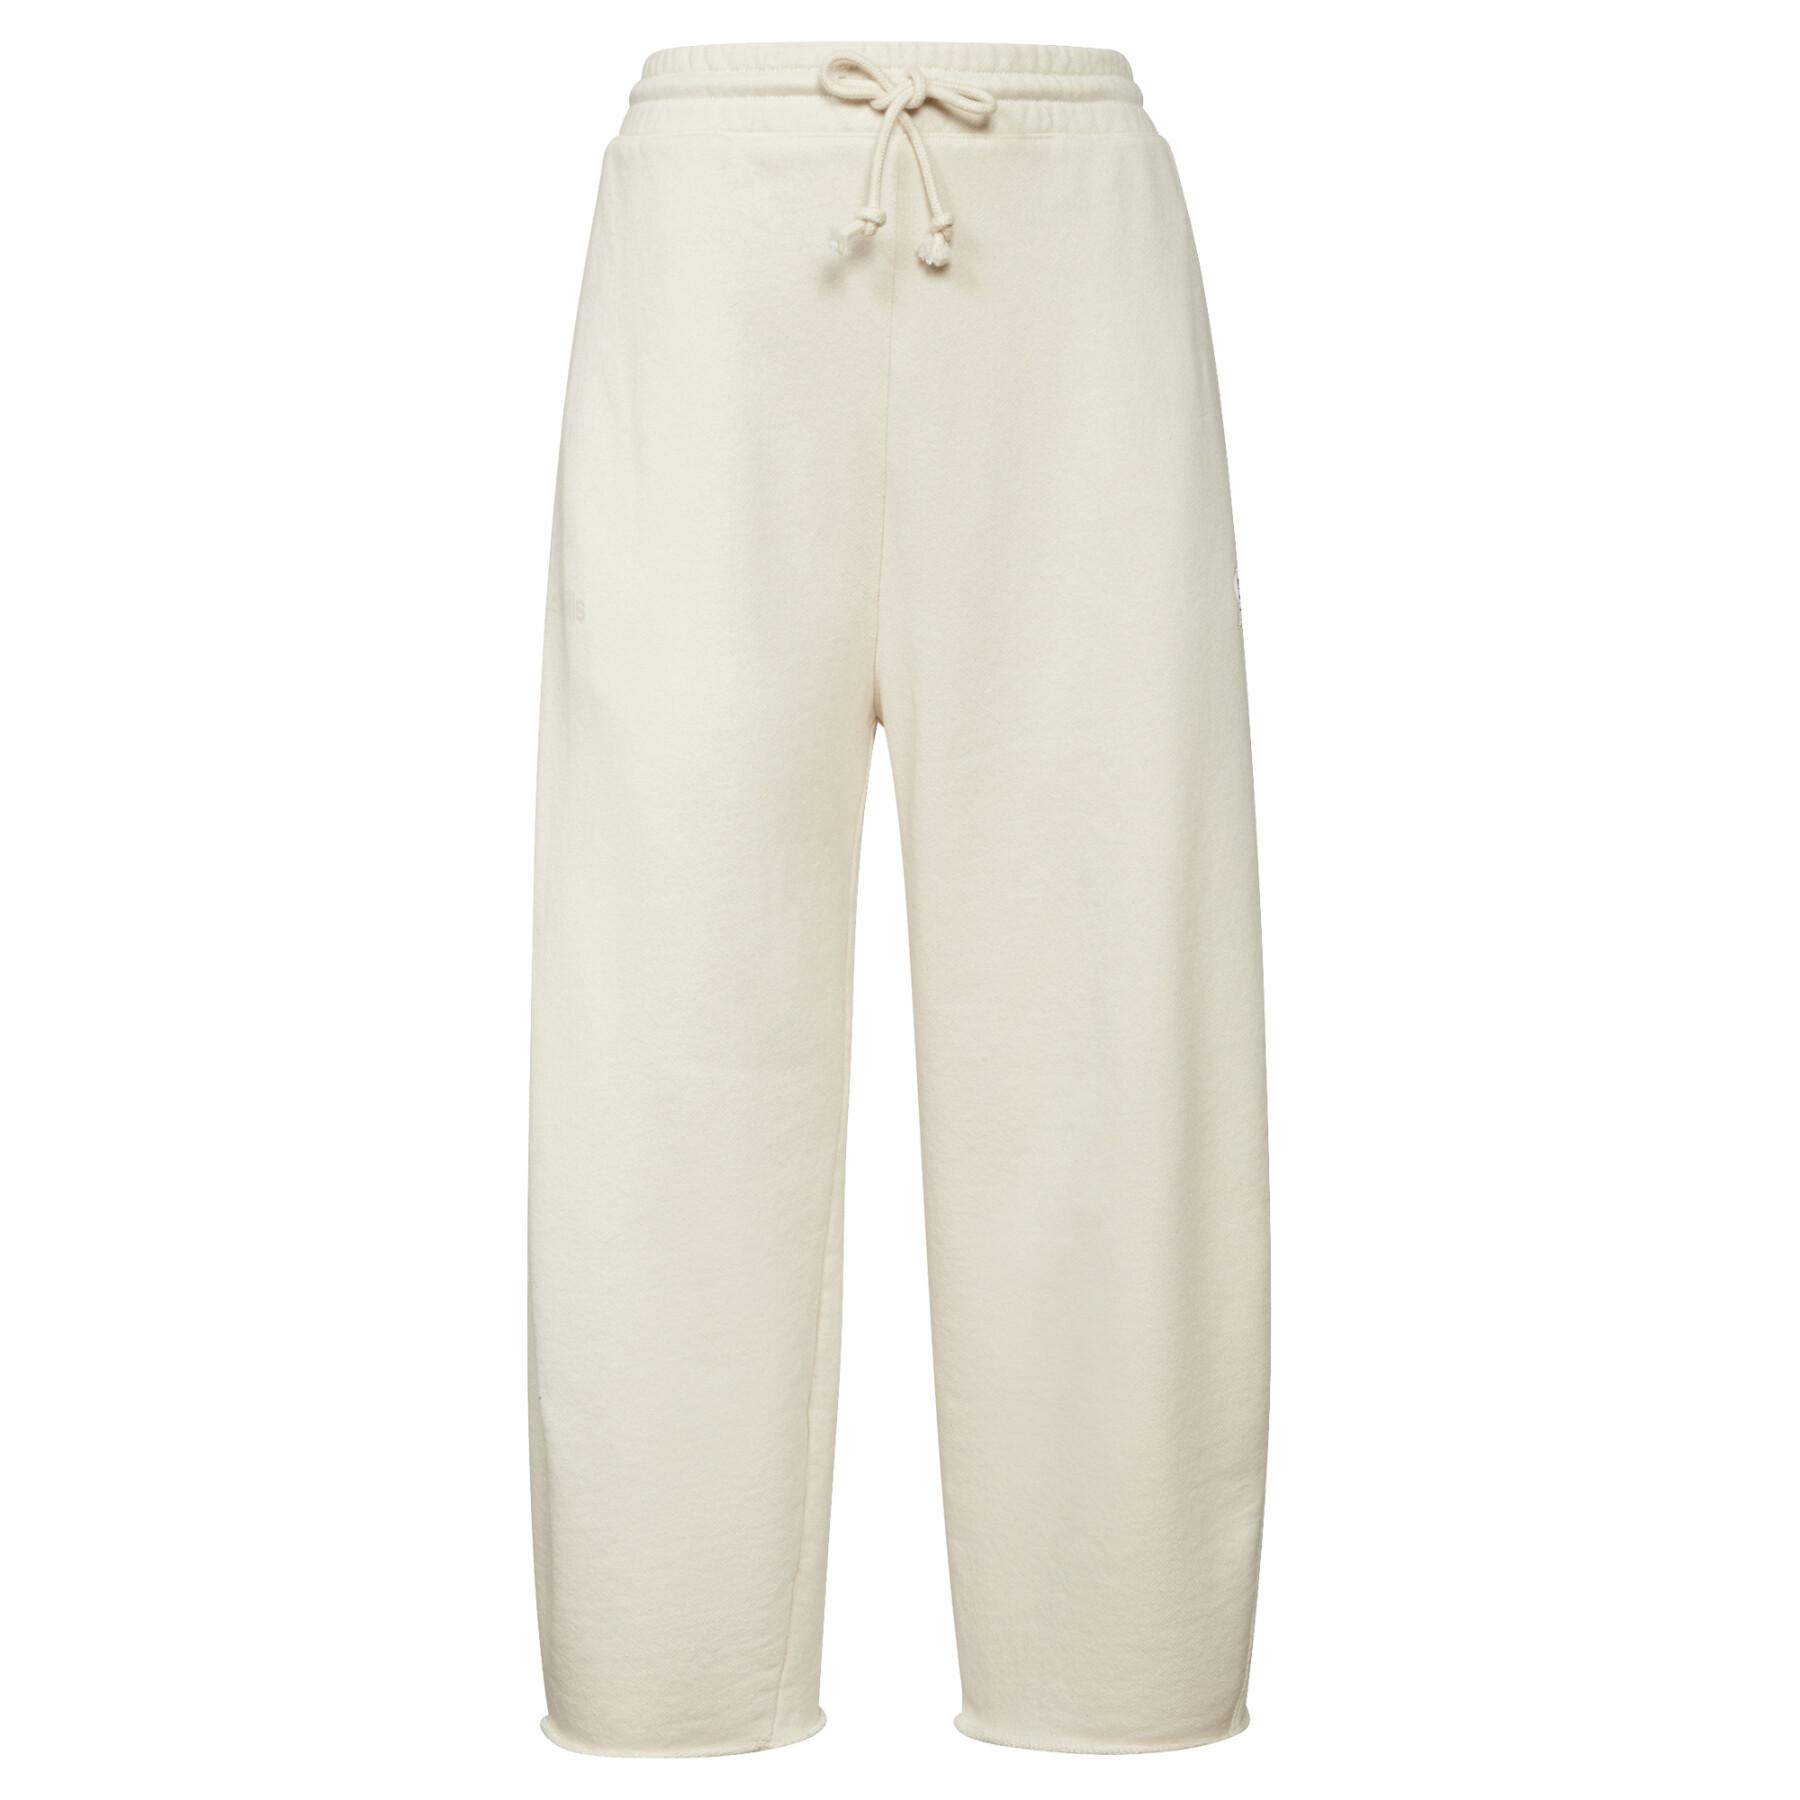 Women's trousers Reebok Les Mills® Non Dye French Terry